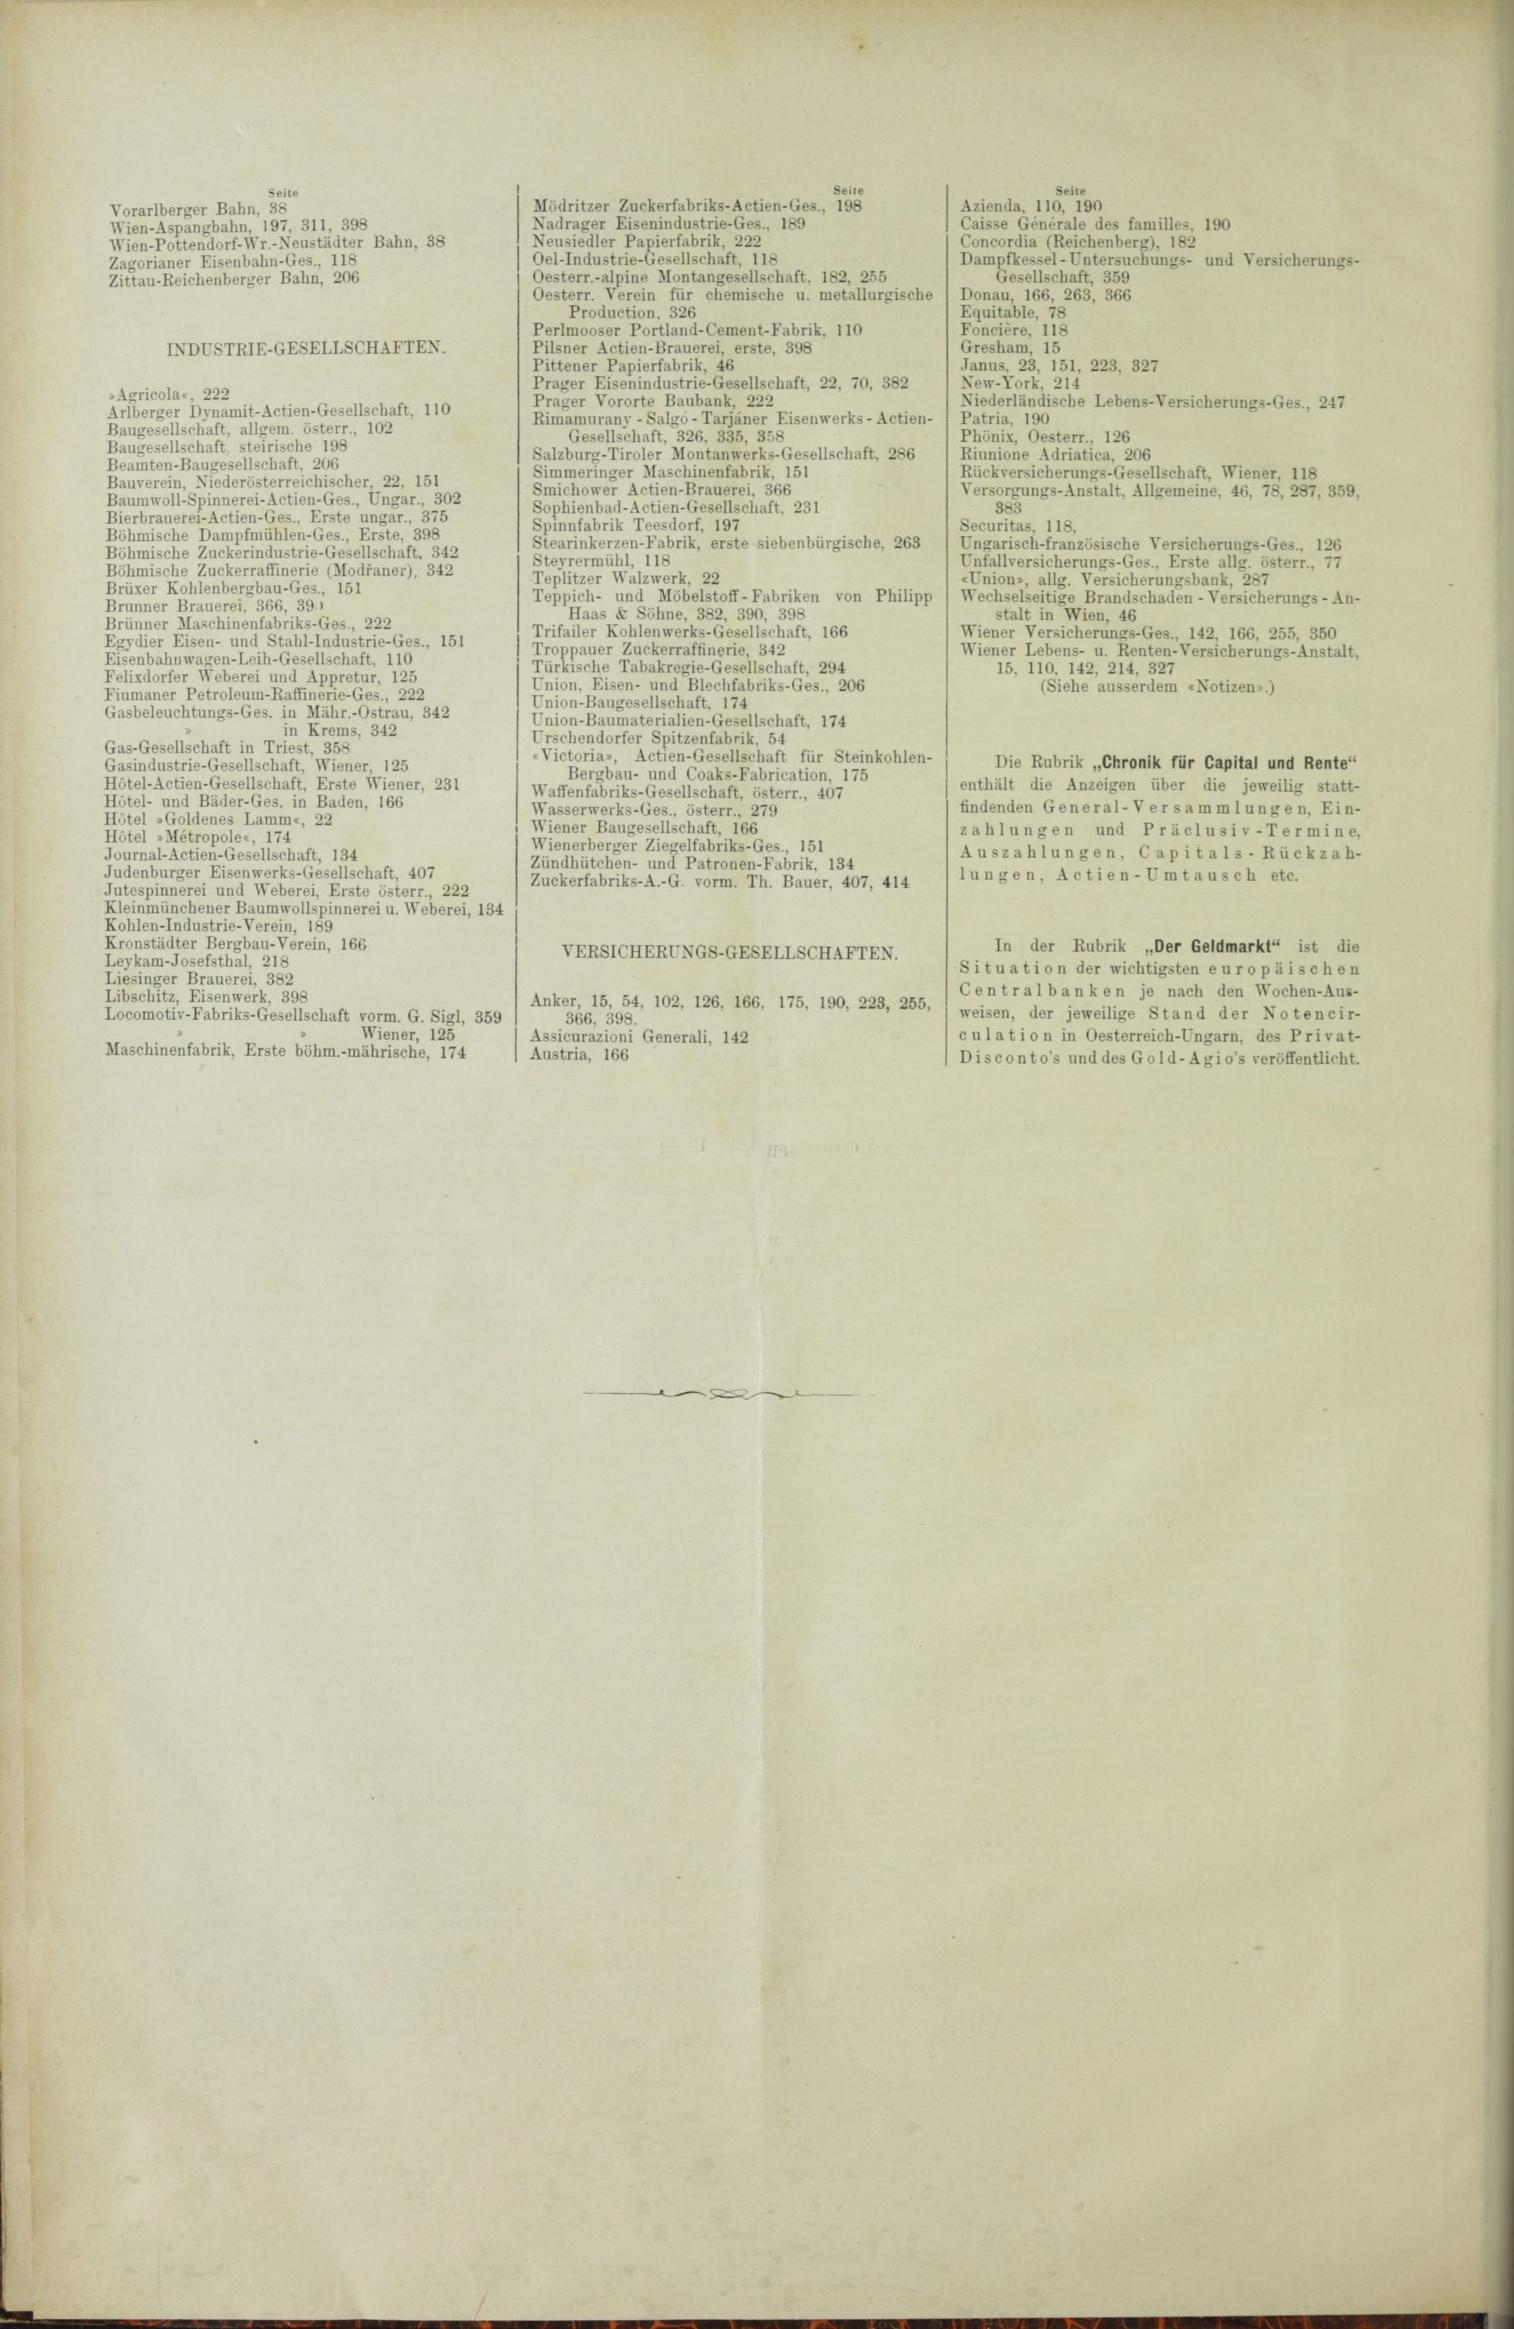 Der Tresor 02.09.1886 - Seite 12